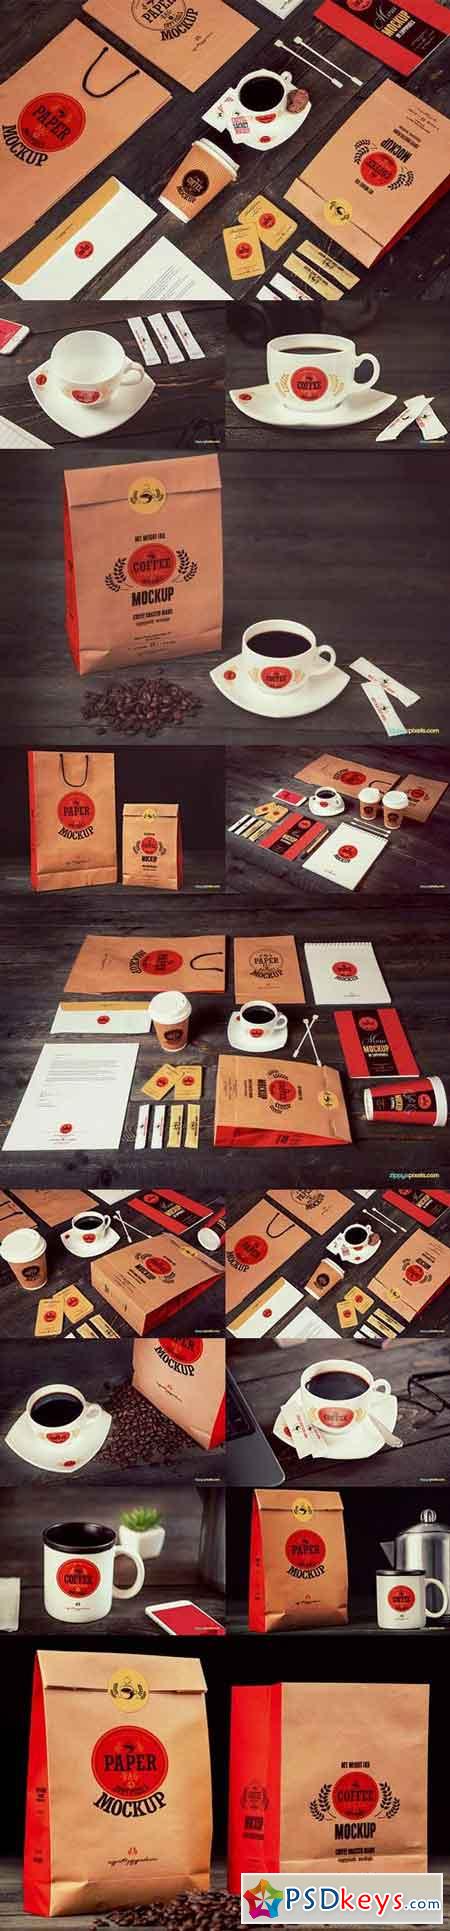 Coffee Branding & Packaging Mockups 561277